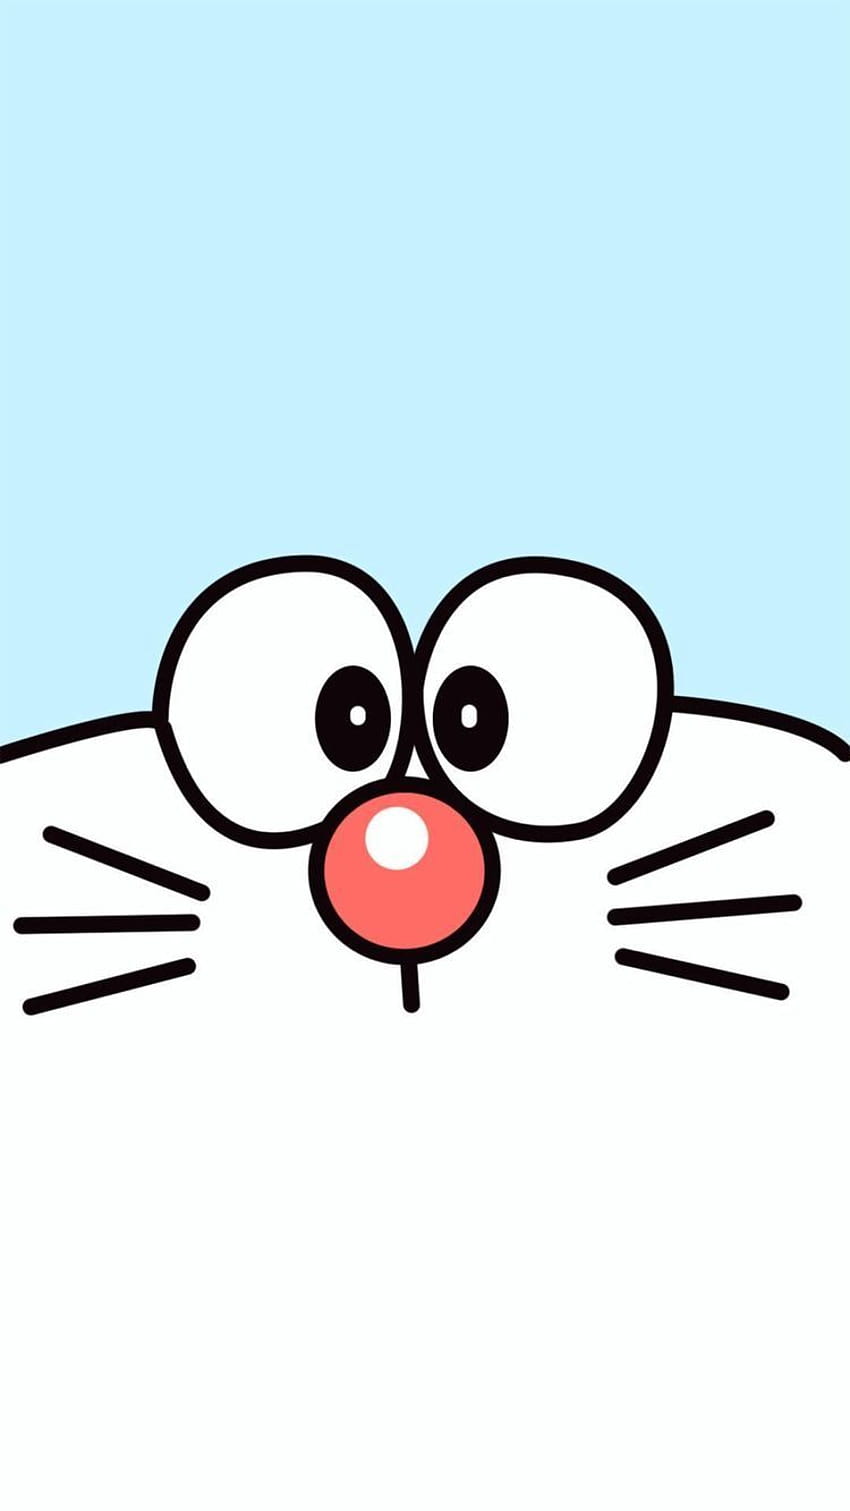 Doraemon: Hãy xem những hình ảnh đáng yêu và phiêu lưu của chú mèo máy Doraemon trong thế giới tương lai của Nobita. Sẽ có nhiều điều thú vị và bất ngờ chờ đón bạn khi đắm chìm vào thế giới của Doraemon.